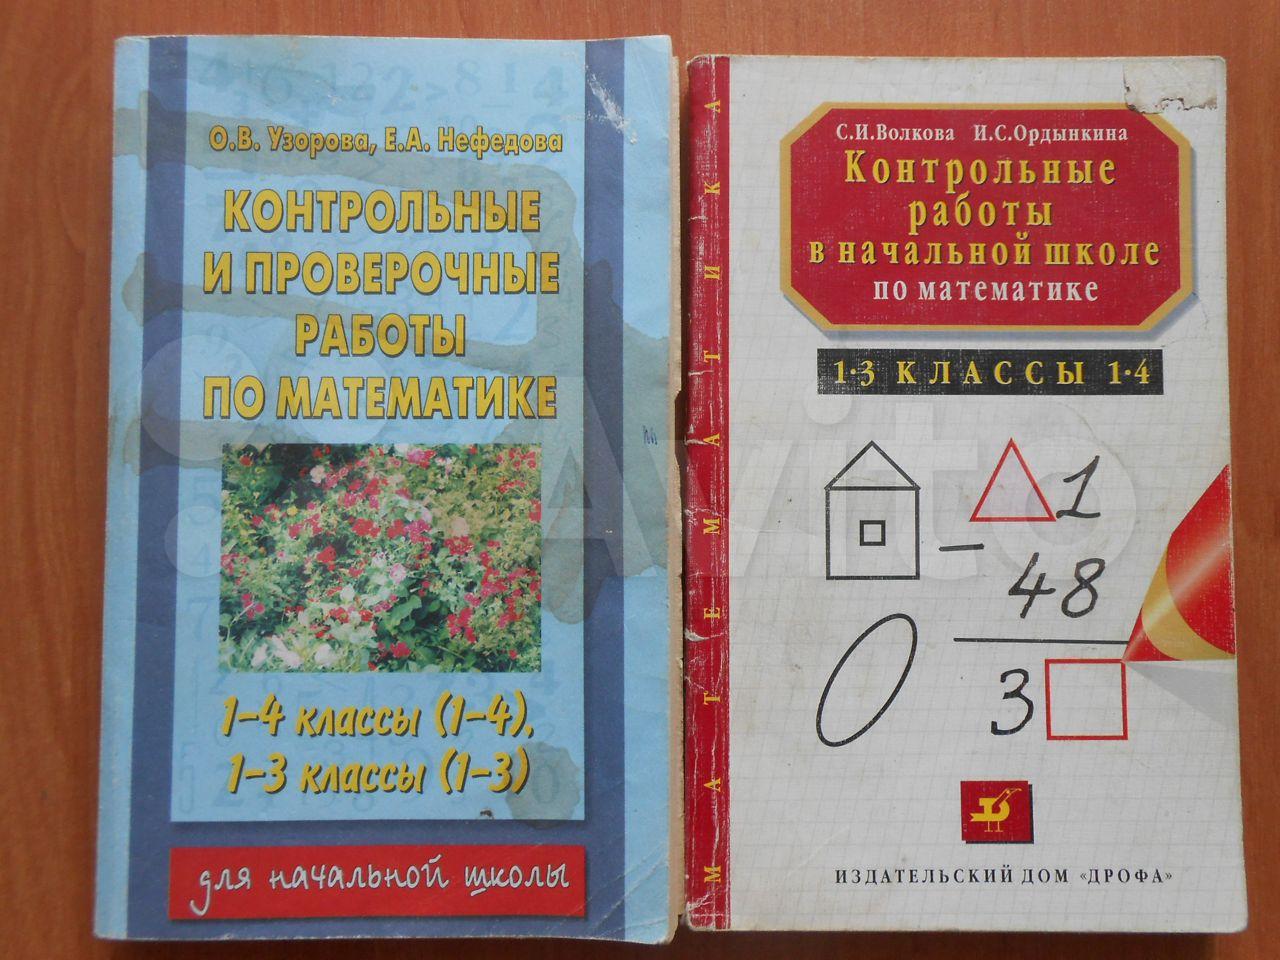 Контрольные работы в начальной школе по математике 1 - 3 классы 1 - 4 С. И. Волкова, И. С. Ордынкина